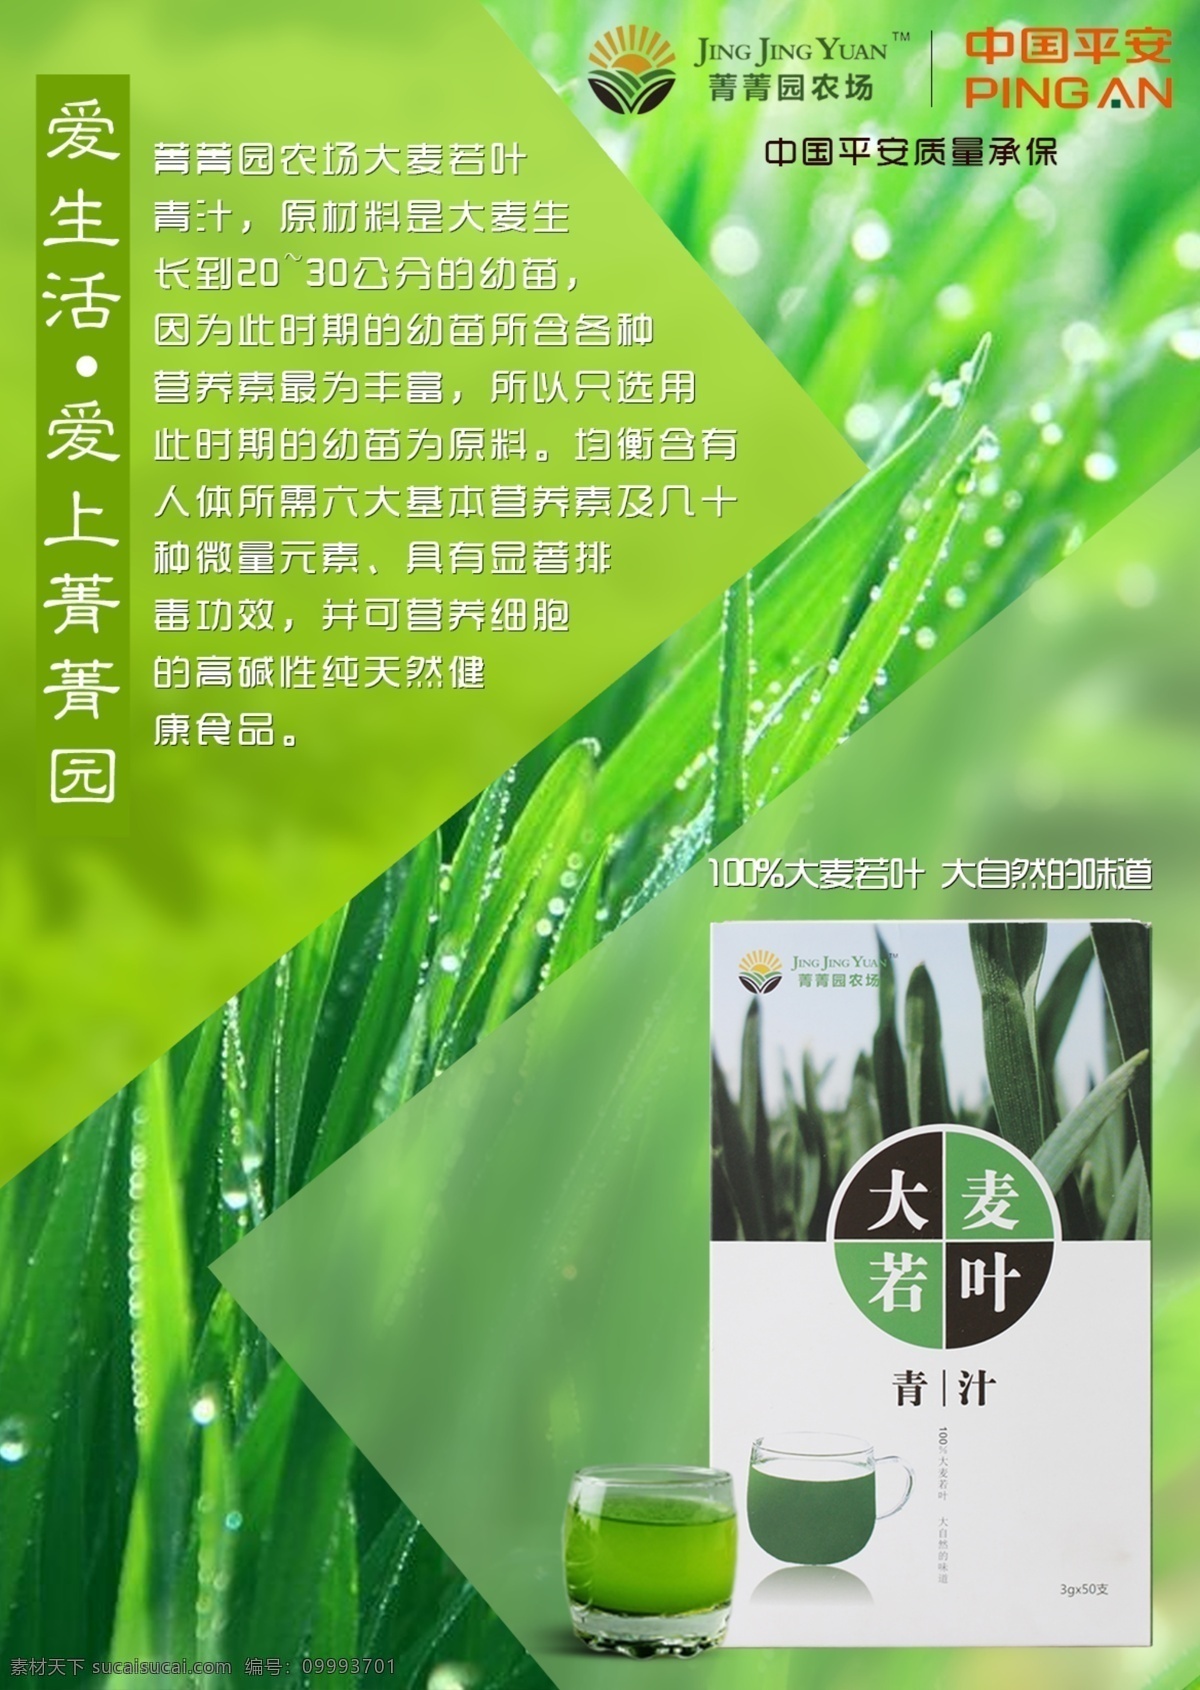 菁菁 园 大麦 叶青 汁 青汁 微商 健康 绿色 天然 养生佳品 功效 安全 生活